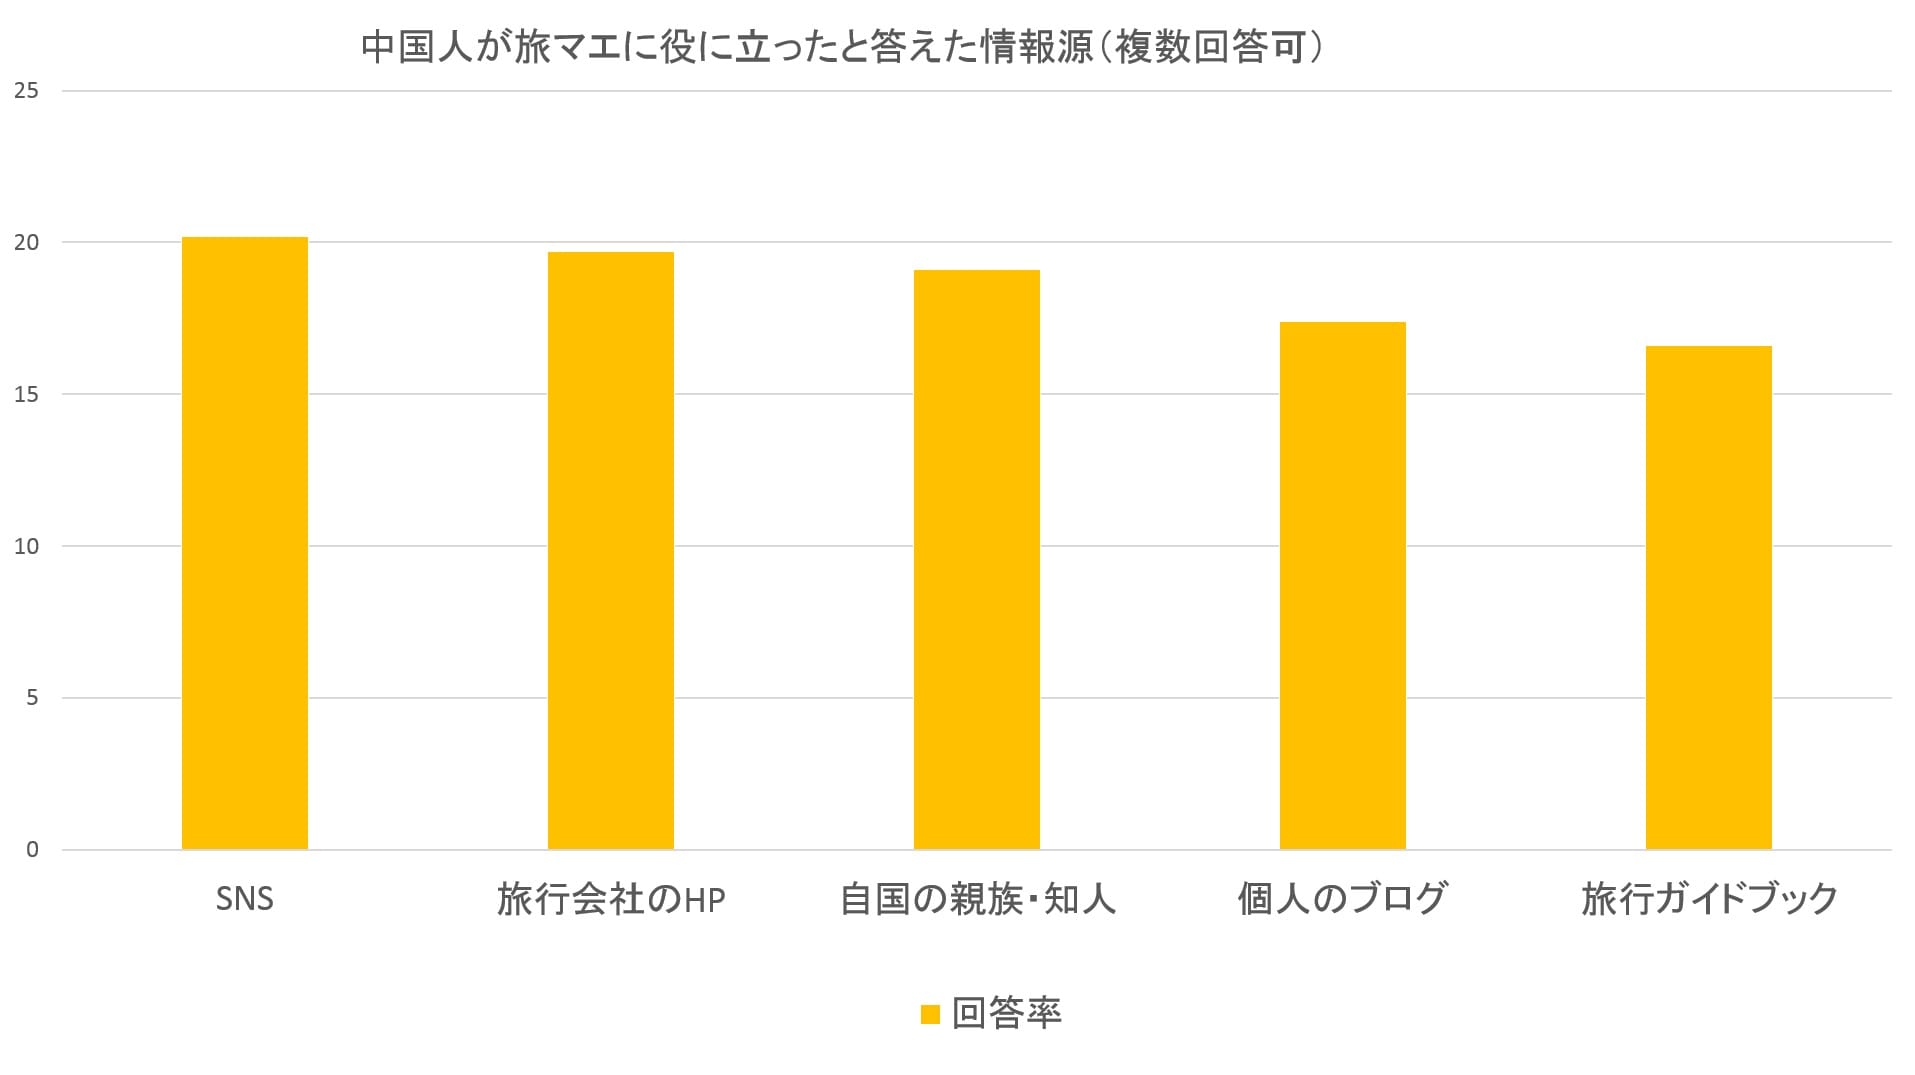 中国人が旅マエに役に立ったと答えた情報源：観光庁の「平成28年消費動向調査」より数値をグラフ化